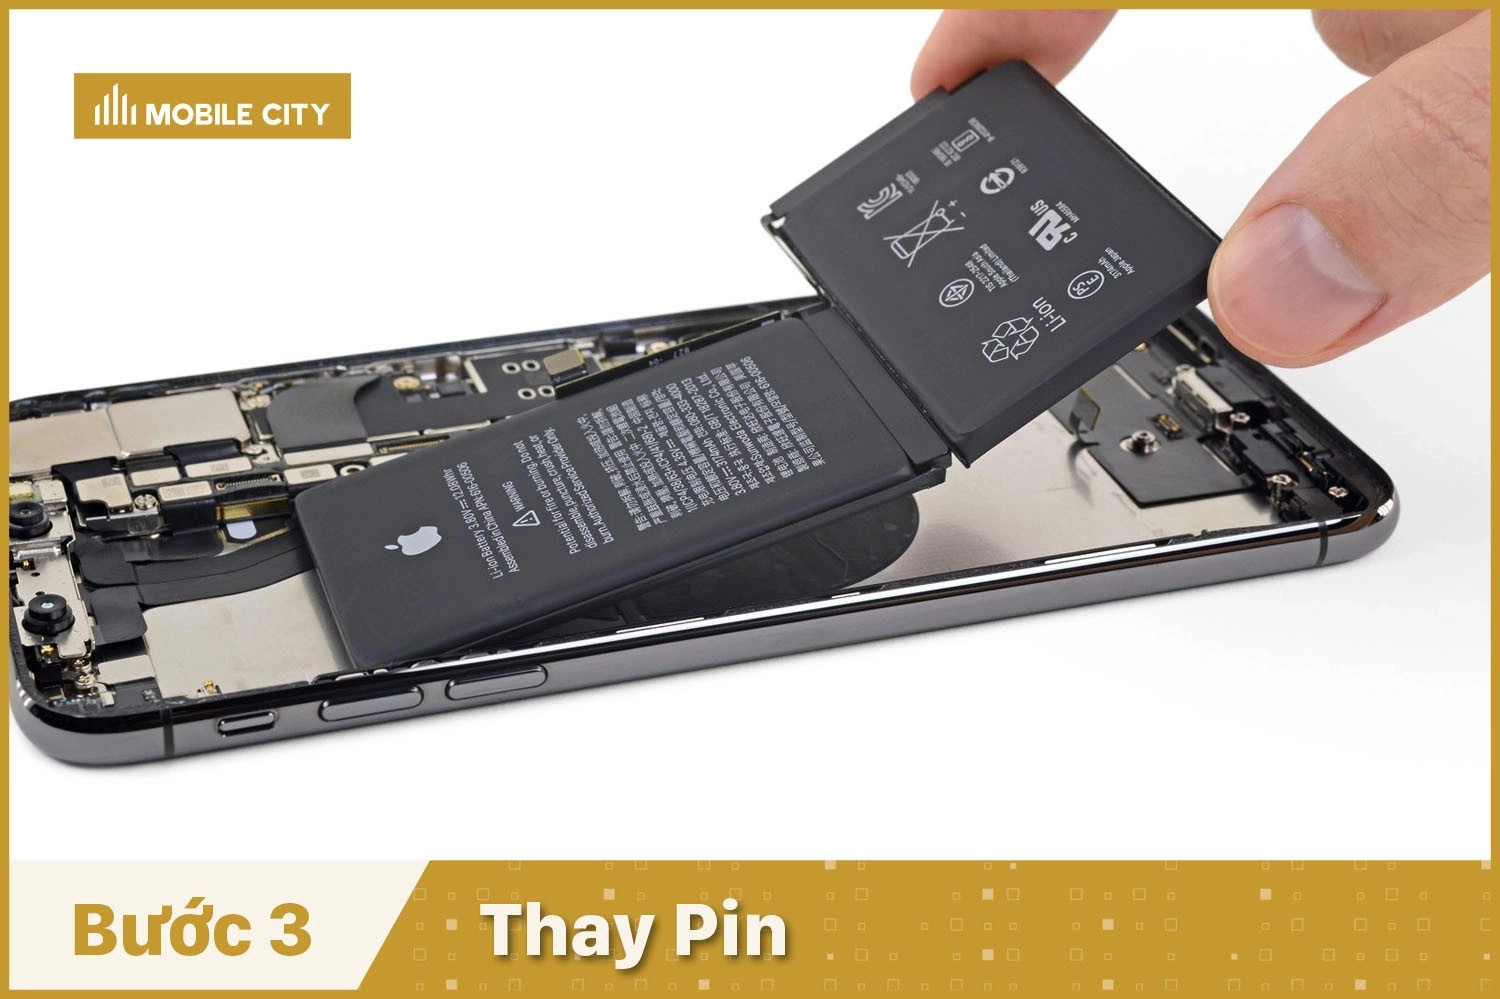 Thay Pin iPhone XS Max, Thay Pin